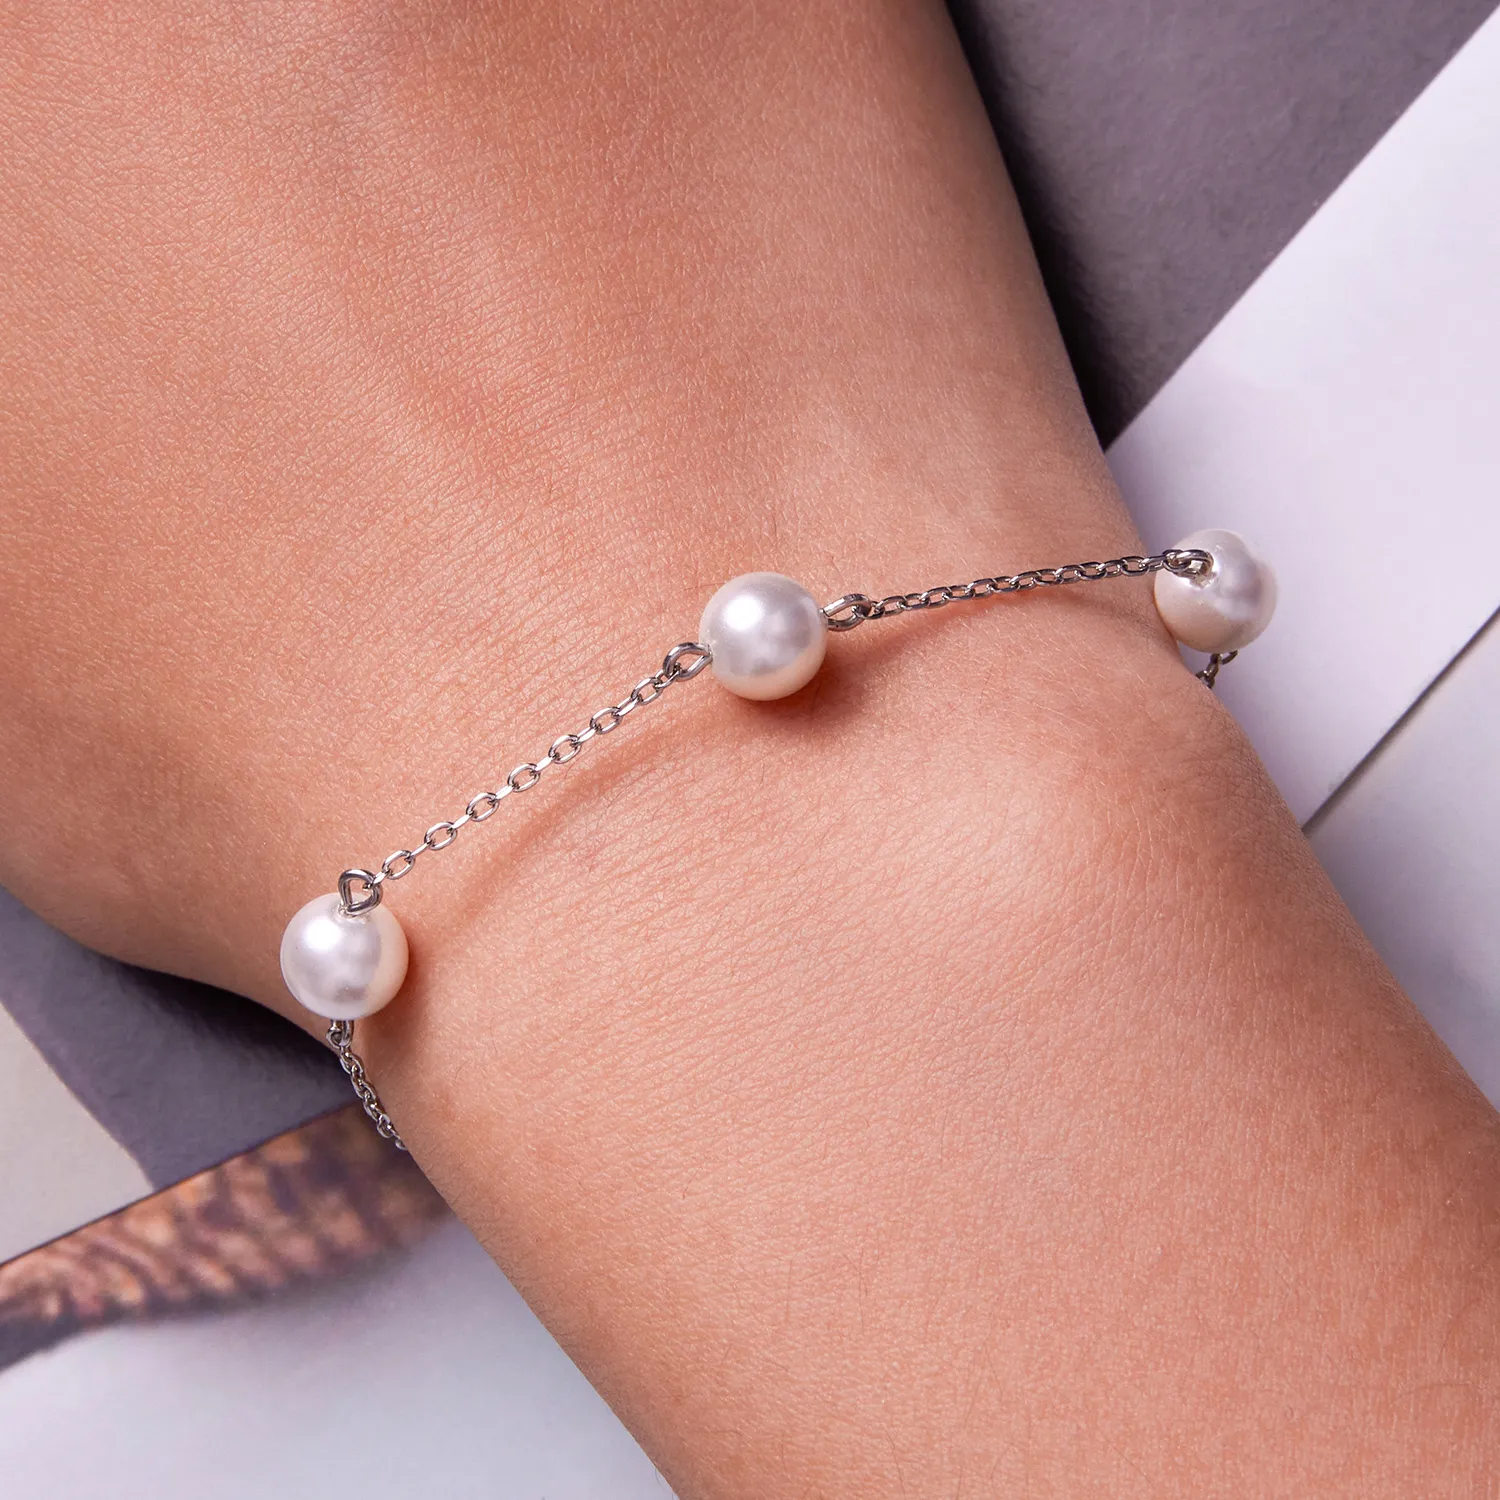 Brățară cu perle în stil Pandora - BSB090